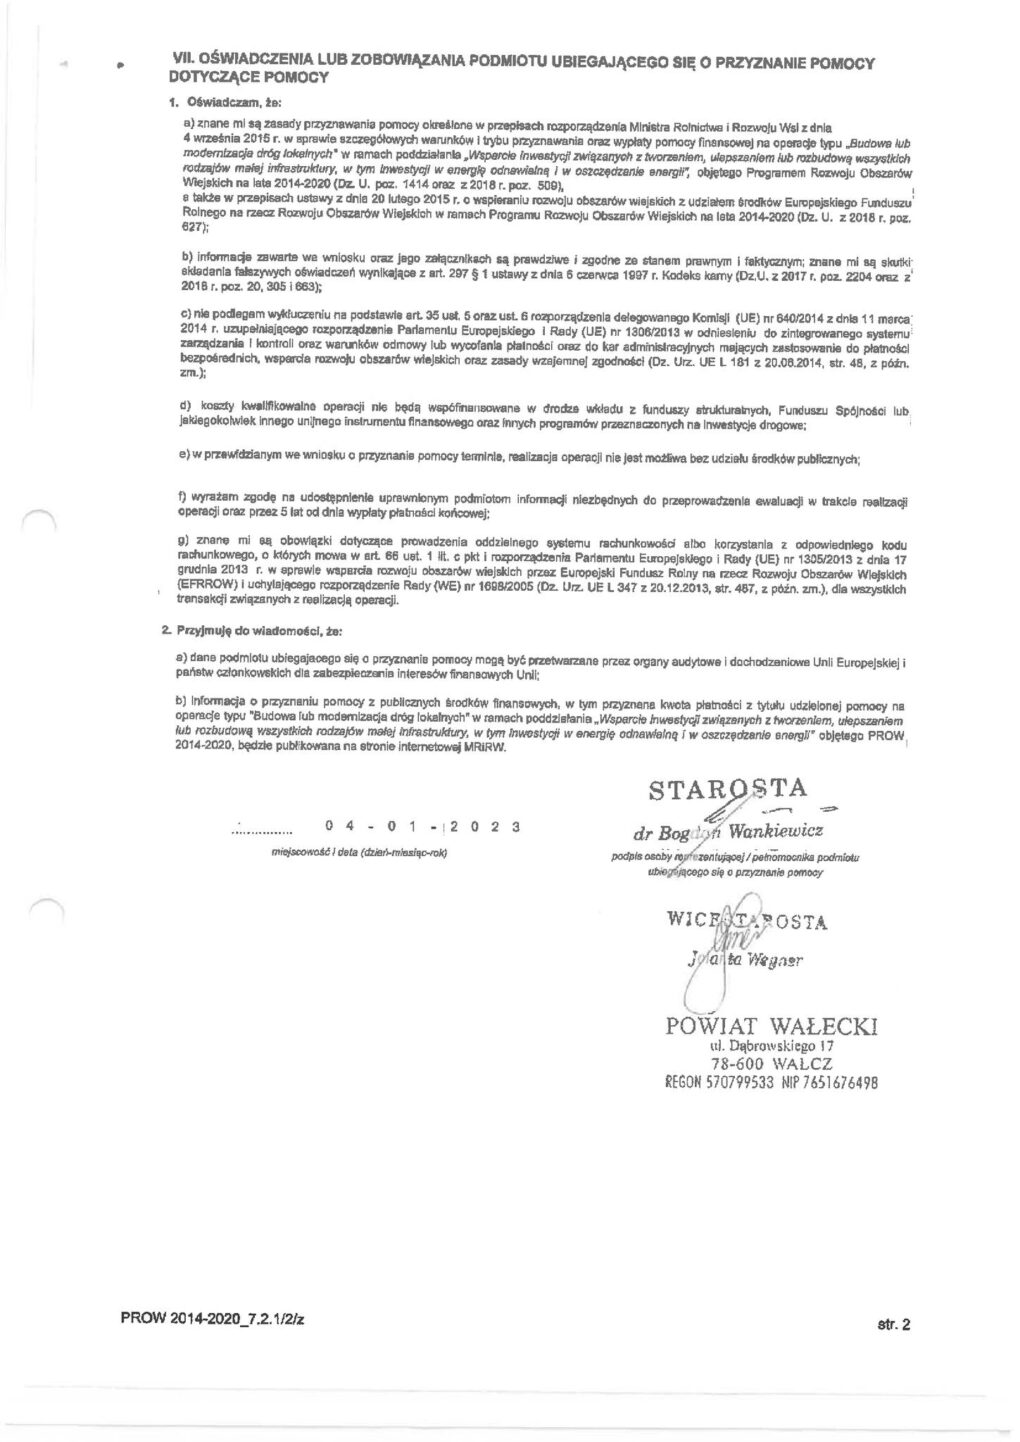 Zdjęcie dokumentu wraz z podpisami Starosty, Wicestarosty oraz członka zarządu zojewództwa zachodniopomorskiego.